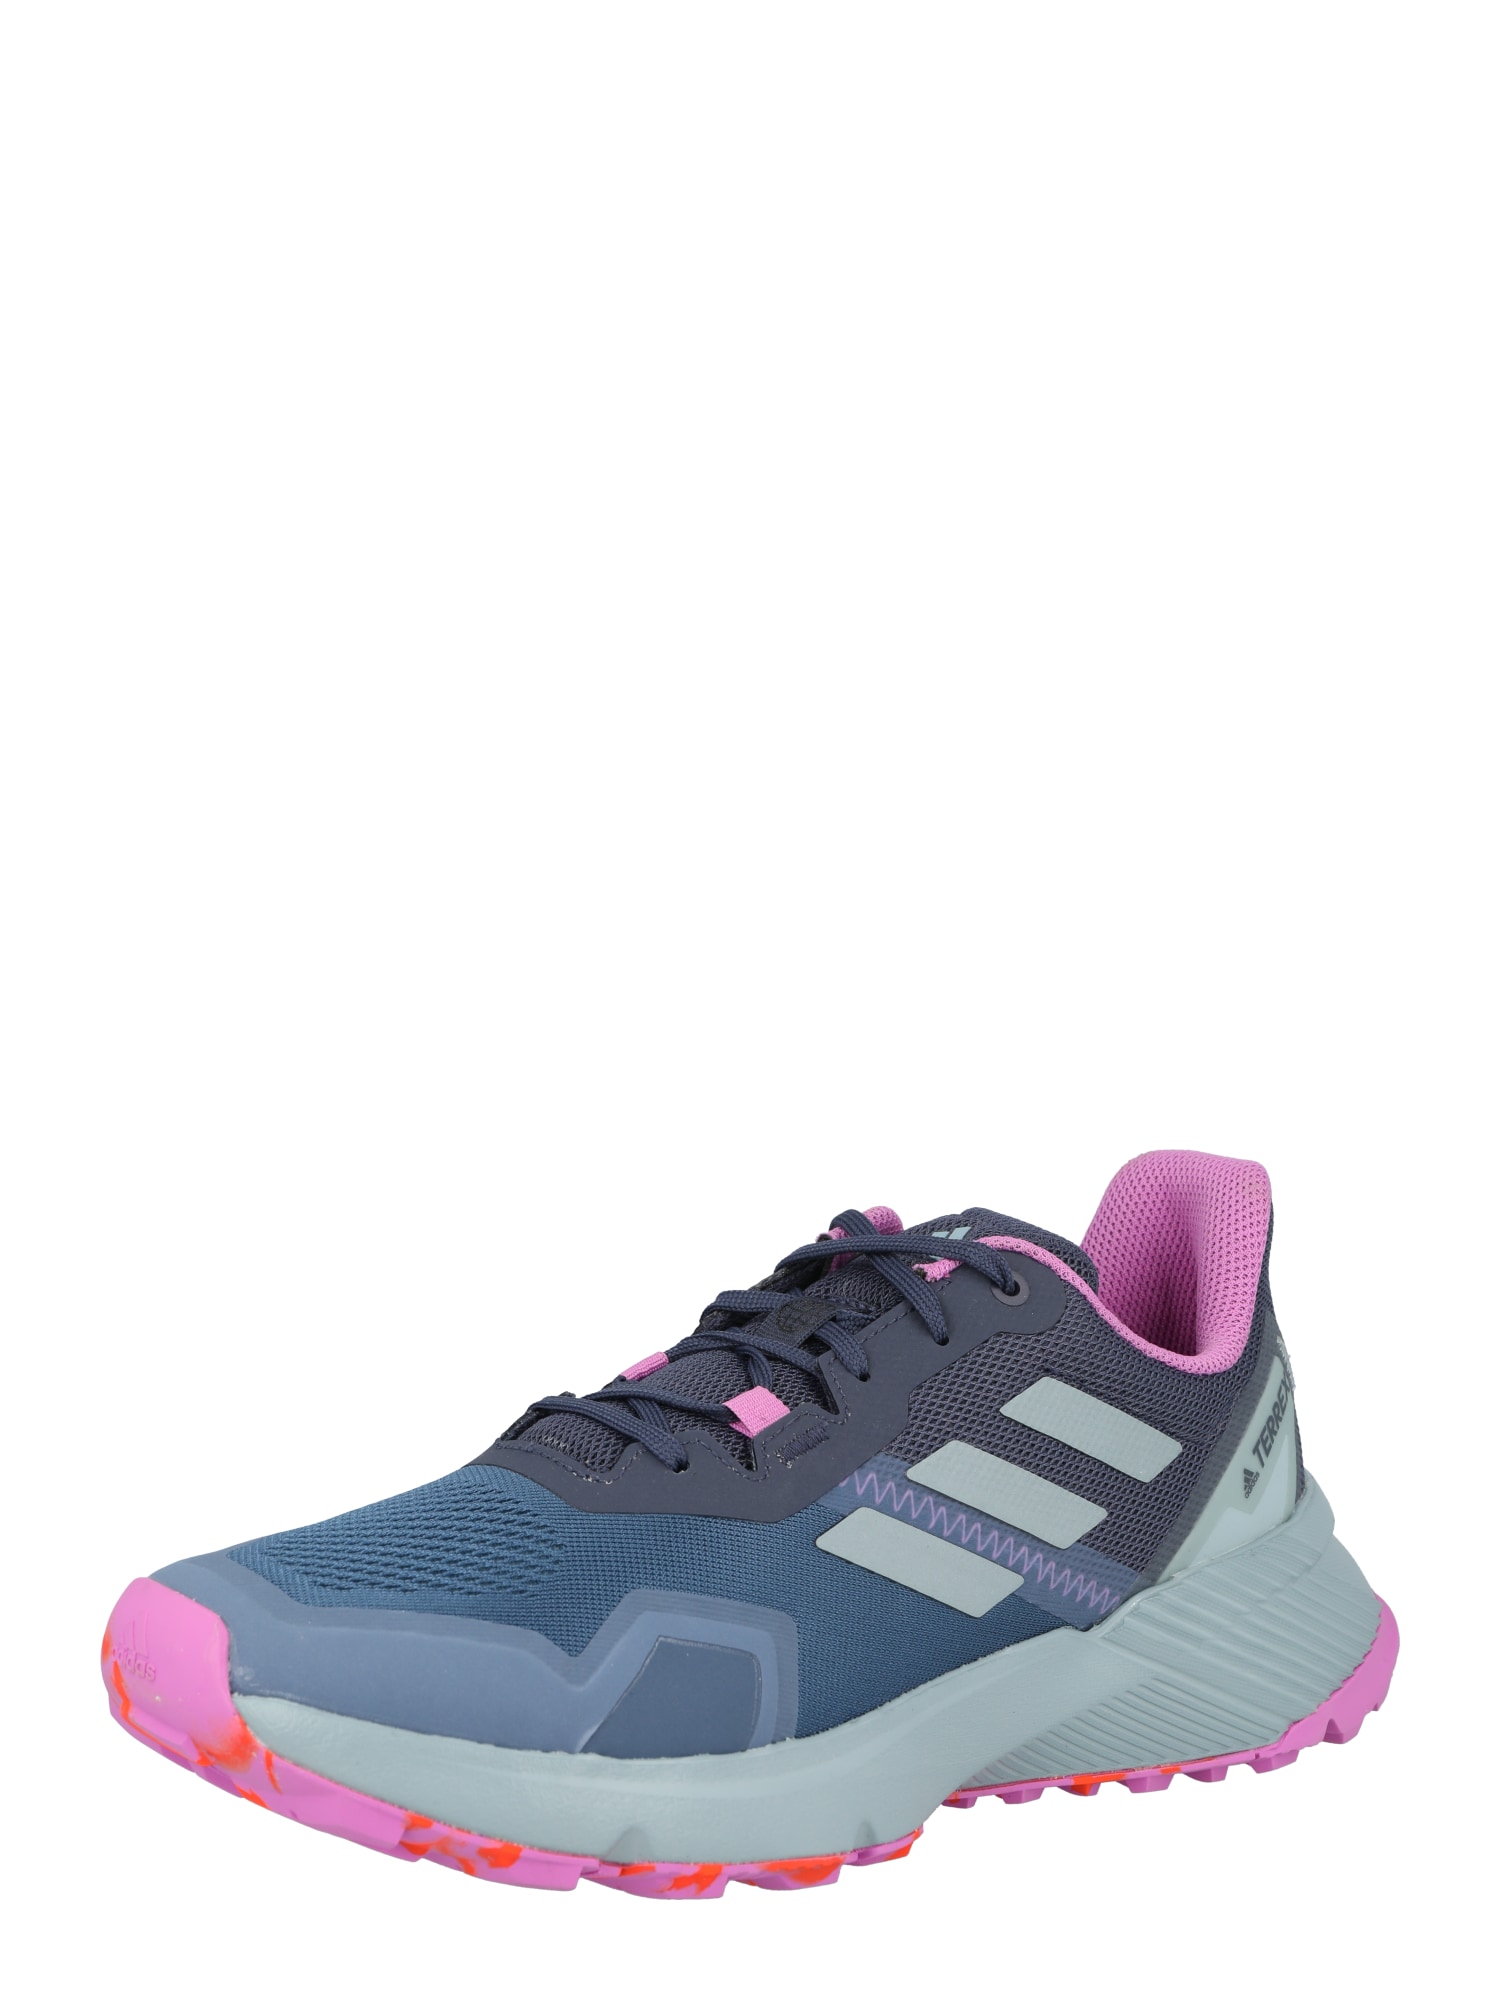 adidas Terrex Bėgimo batai tamsiai pilka / dūmų pilka / šviesiai violetinė / melsvai pilka